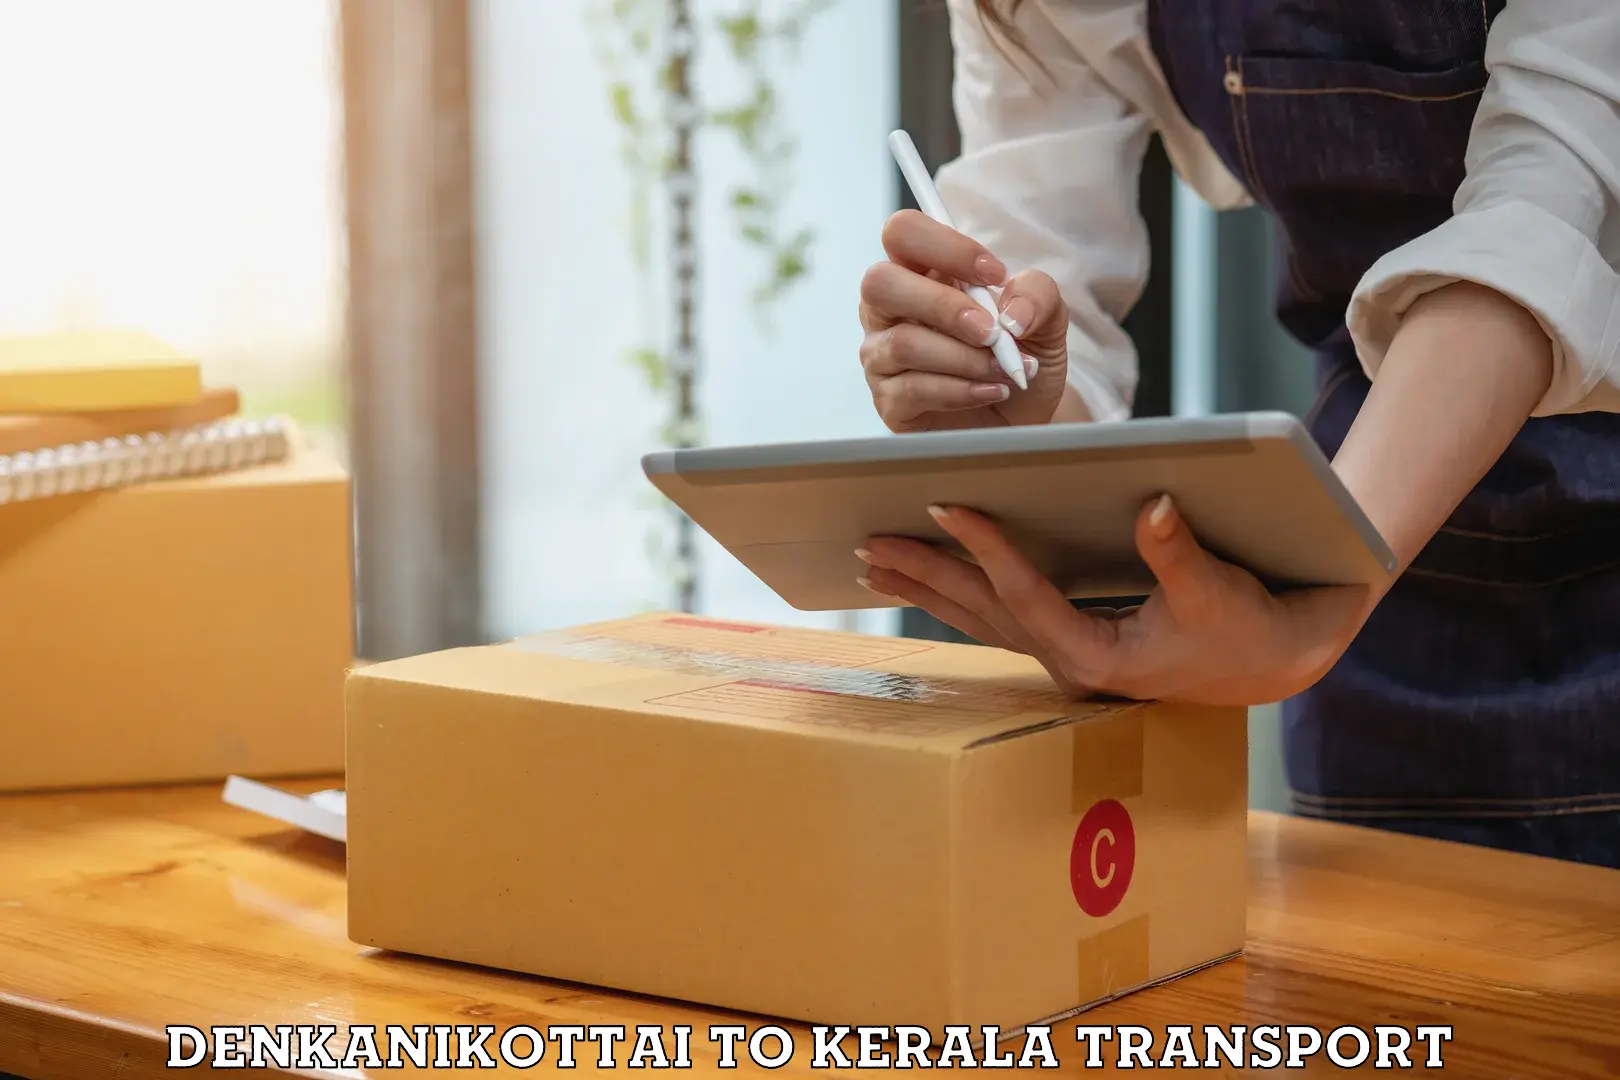 Furniture transport service Denkanikottai to IIIT Kottayam